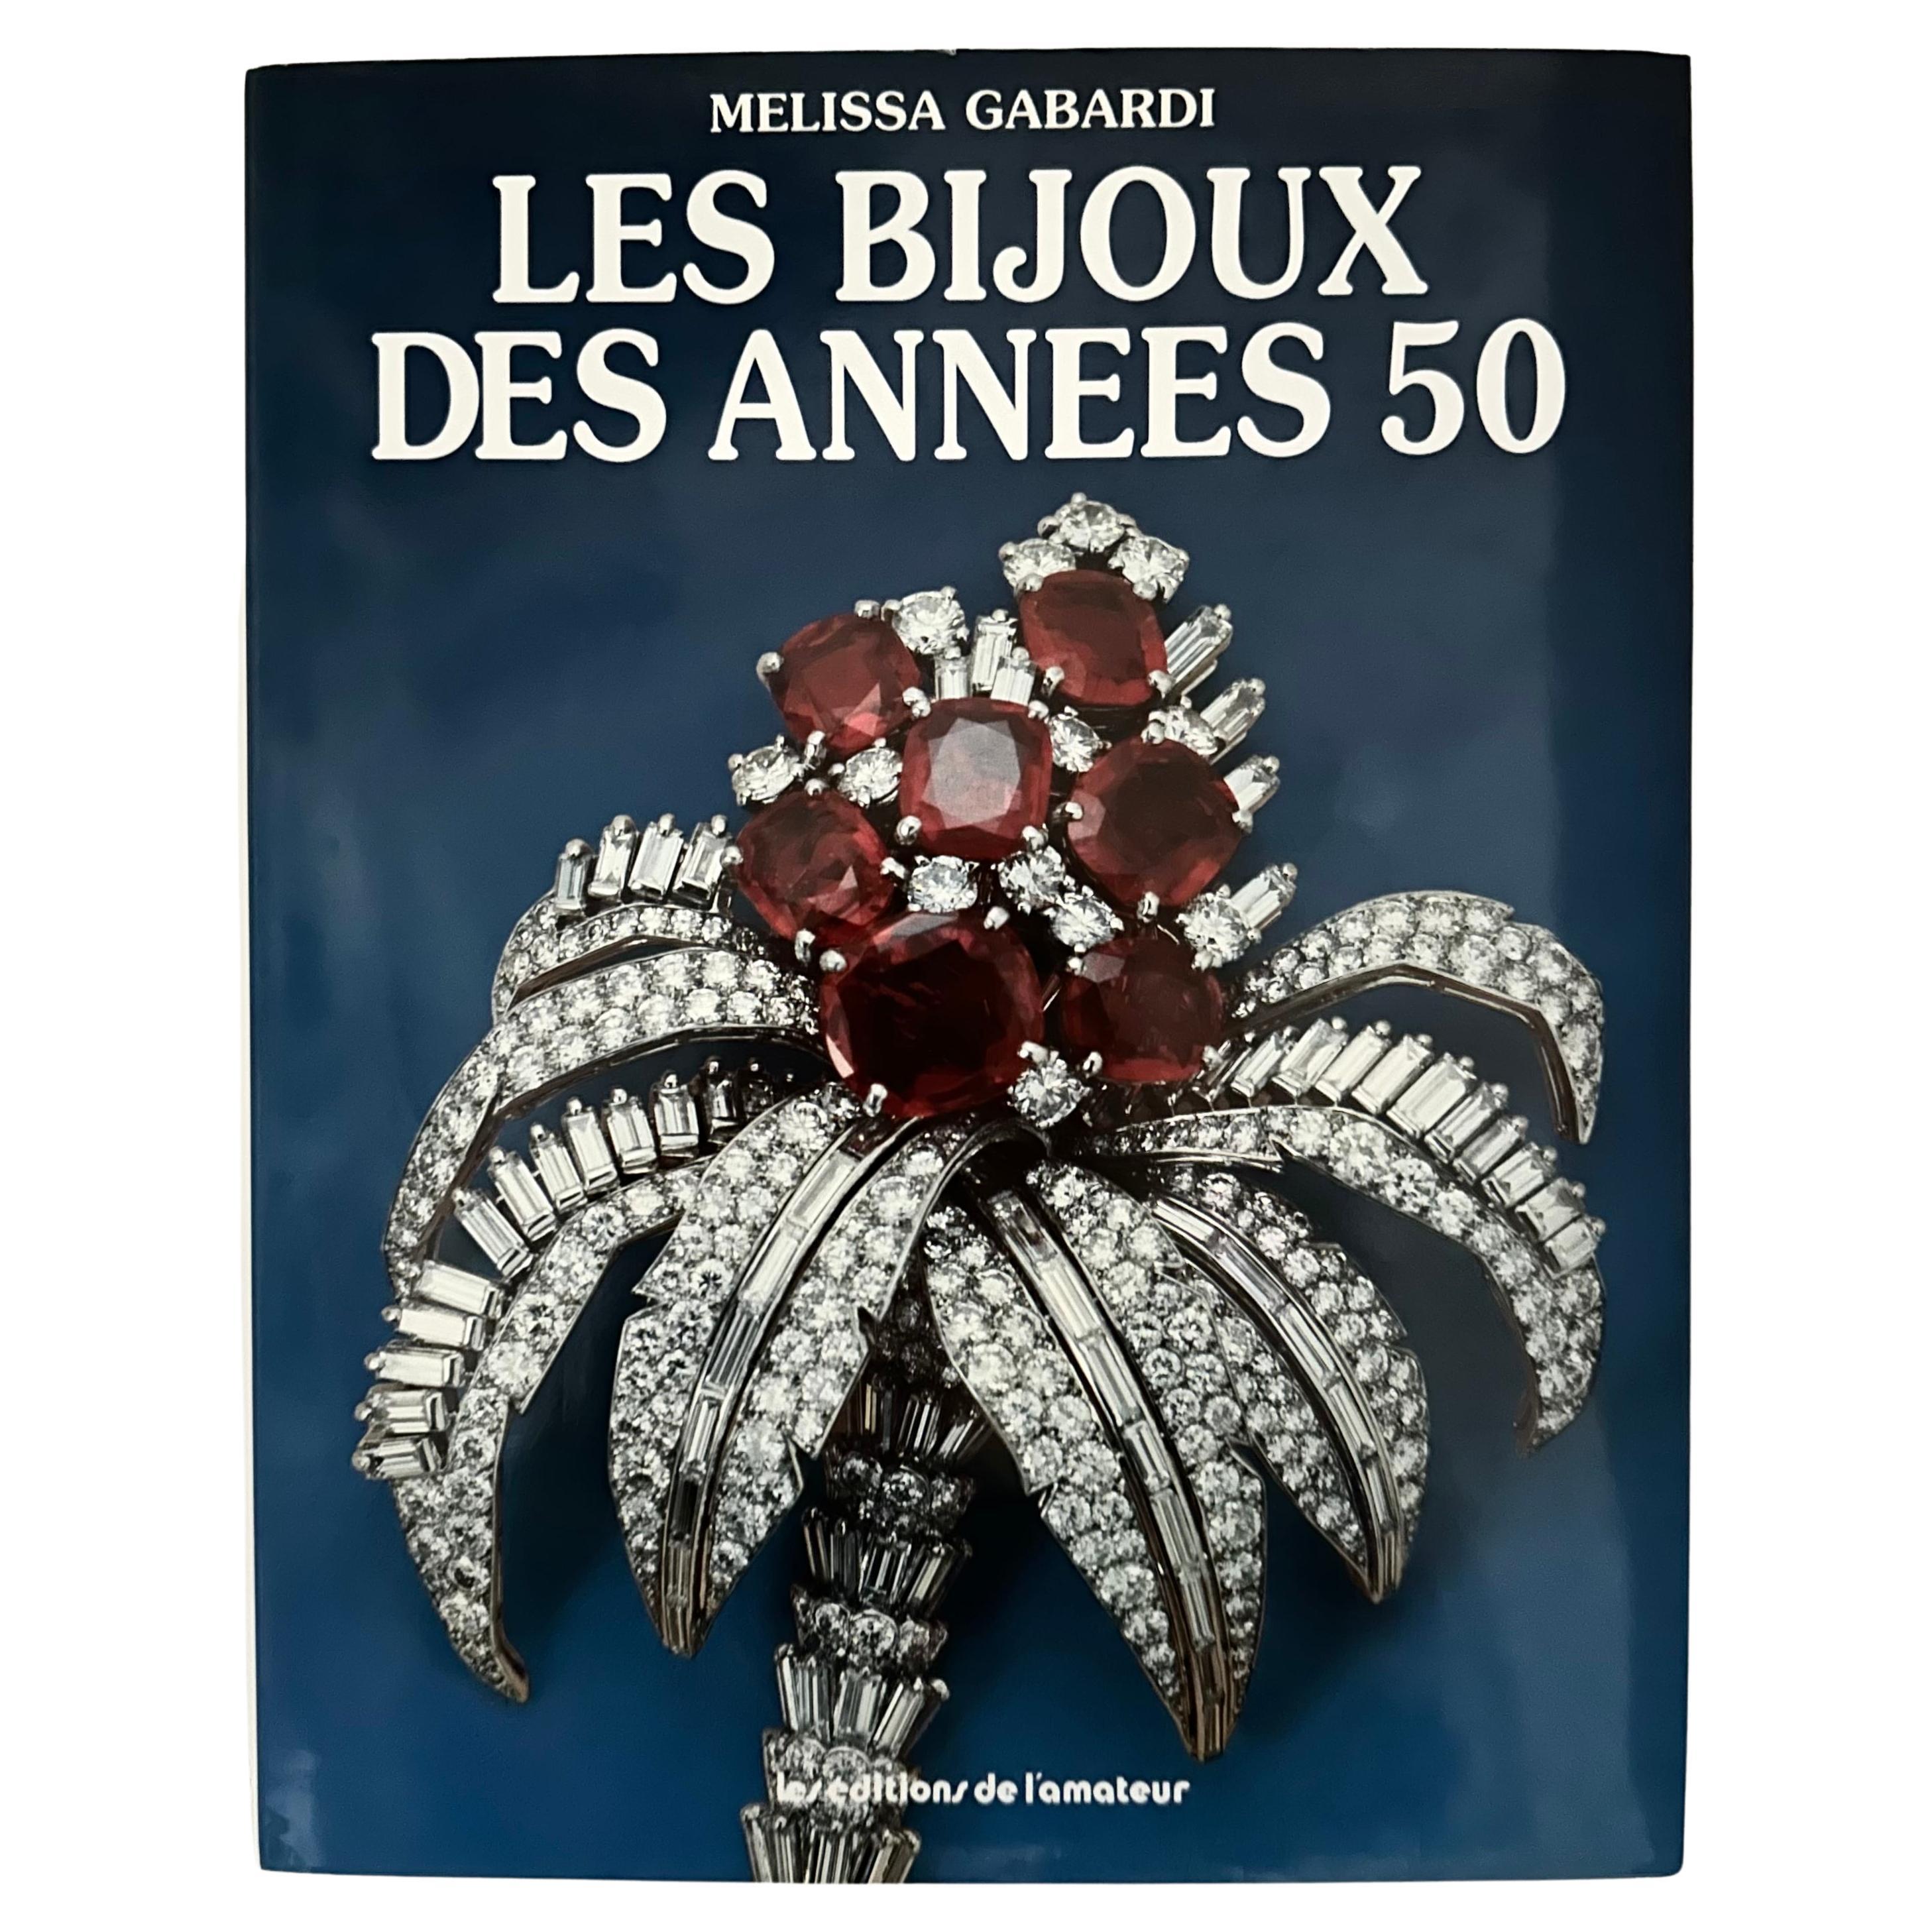 Les Bijoux des Années 50 - Melissa Gabardi - 1. französische Ausgabe, Paris, 1987